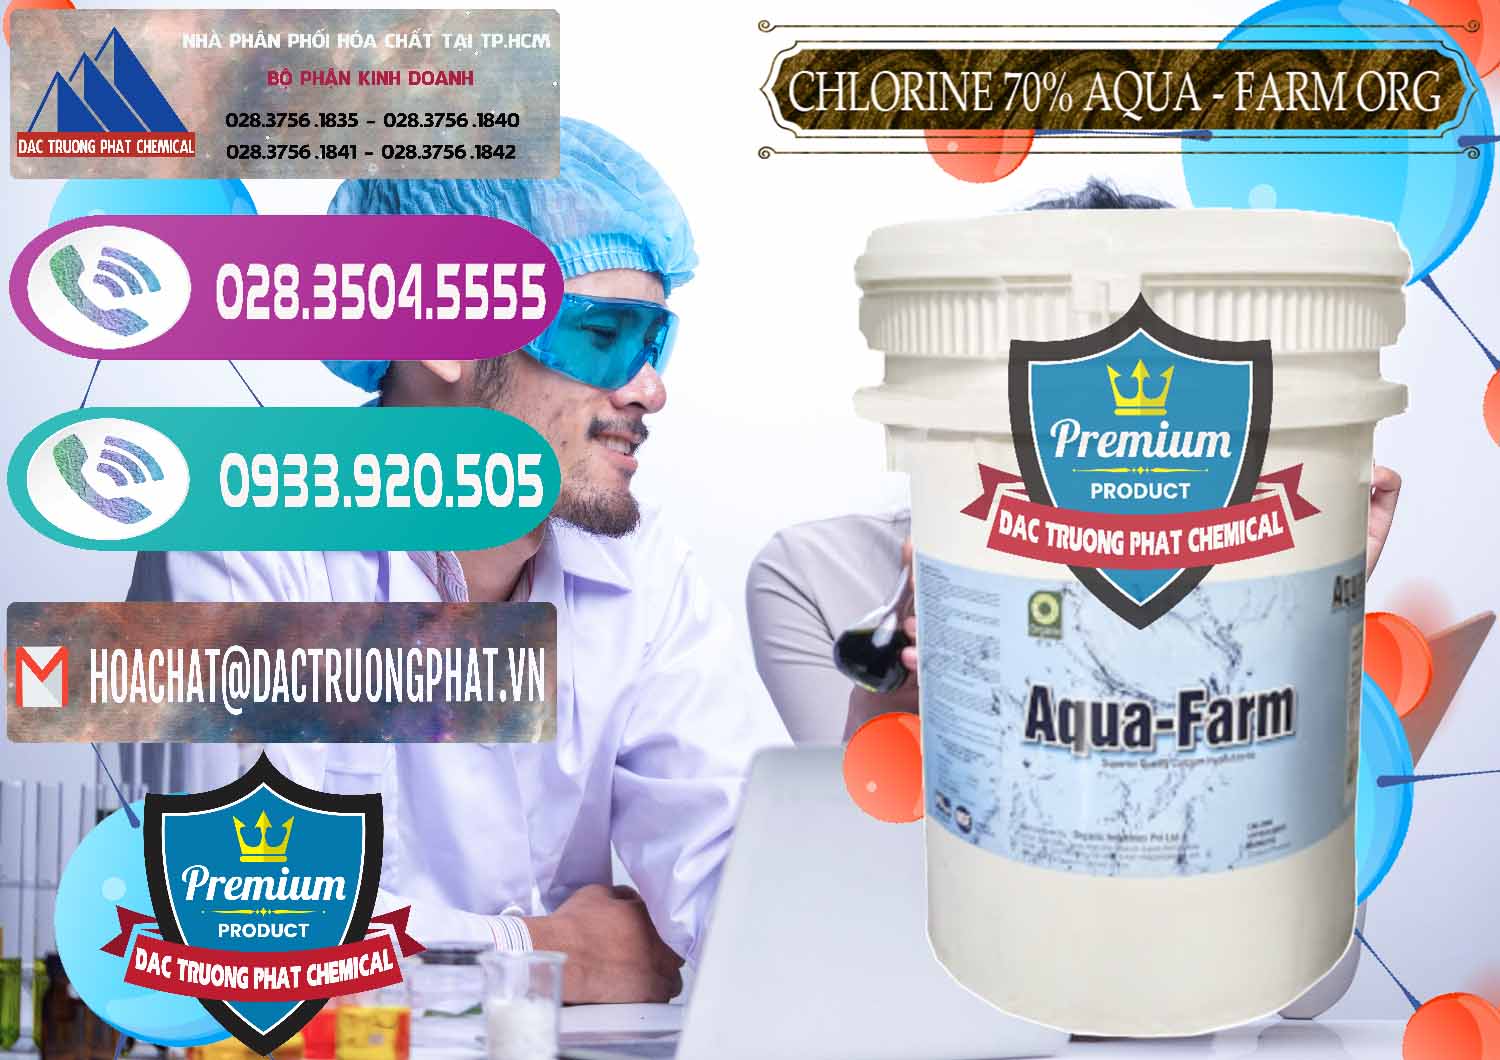 Đơn vị bán _ phân phối Chlorine – Clorin 70% Aqua - Farm ORG Organic Ấn Độ India - 0246 - Đơn vị nhập khẩu _ cung cấp hóa chất tại TP.HCM - hoachatxulynuoc.com